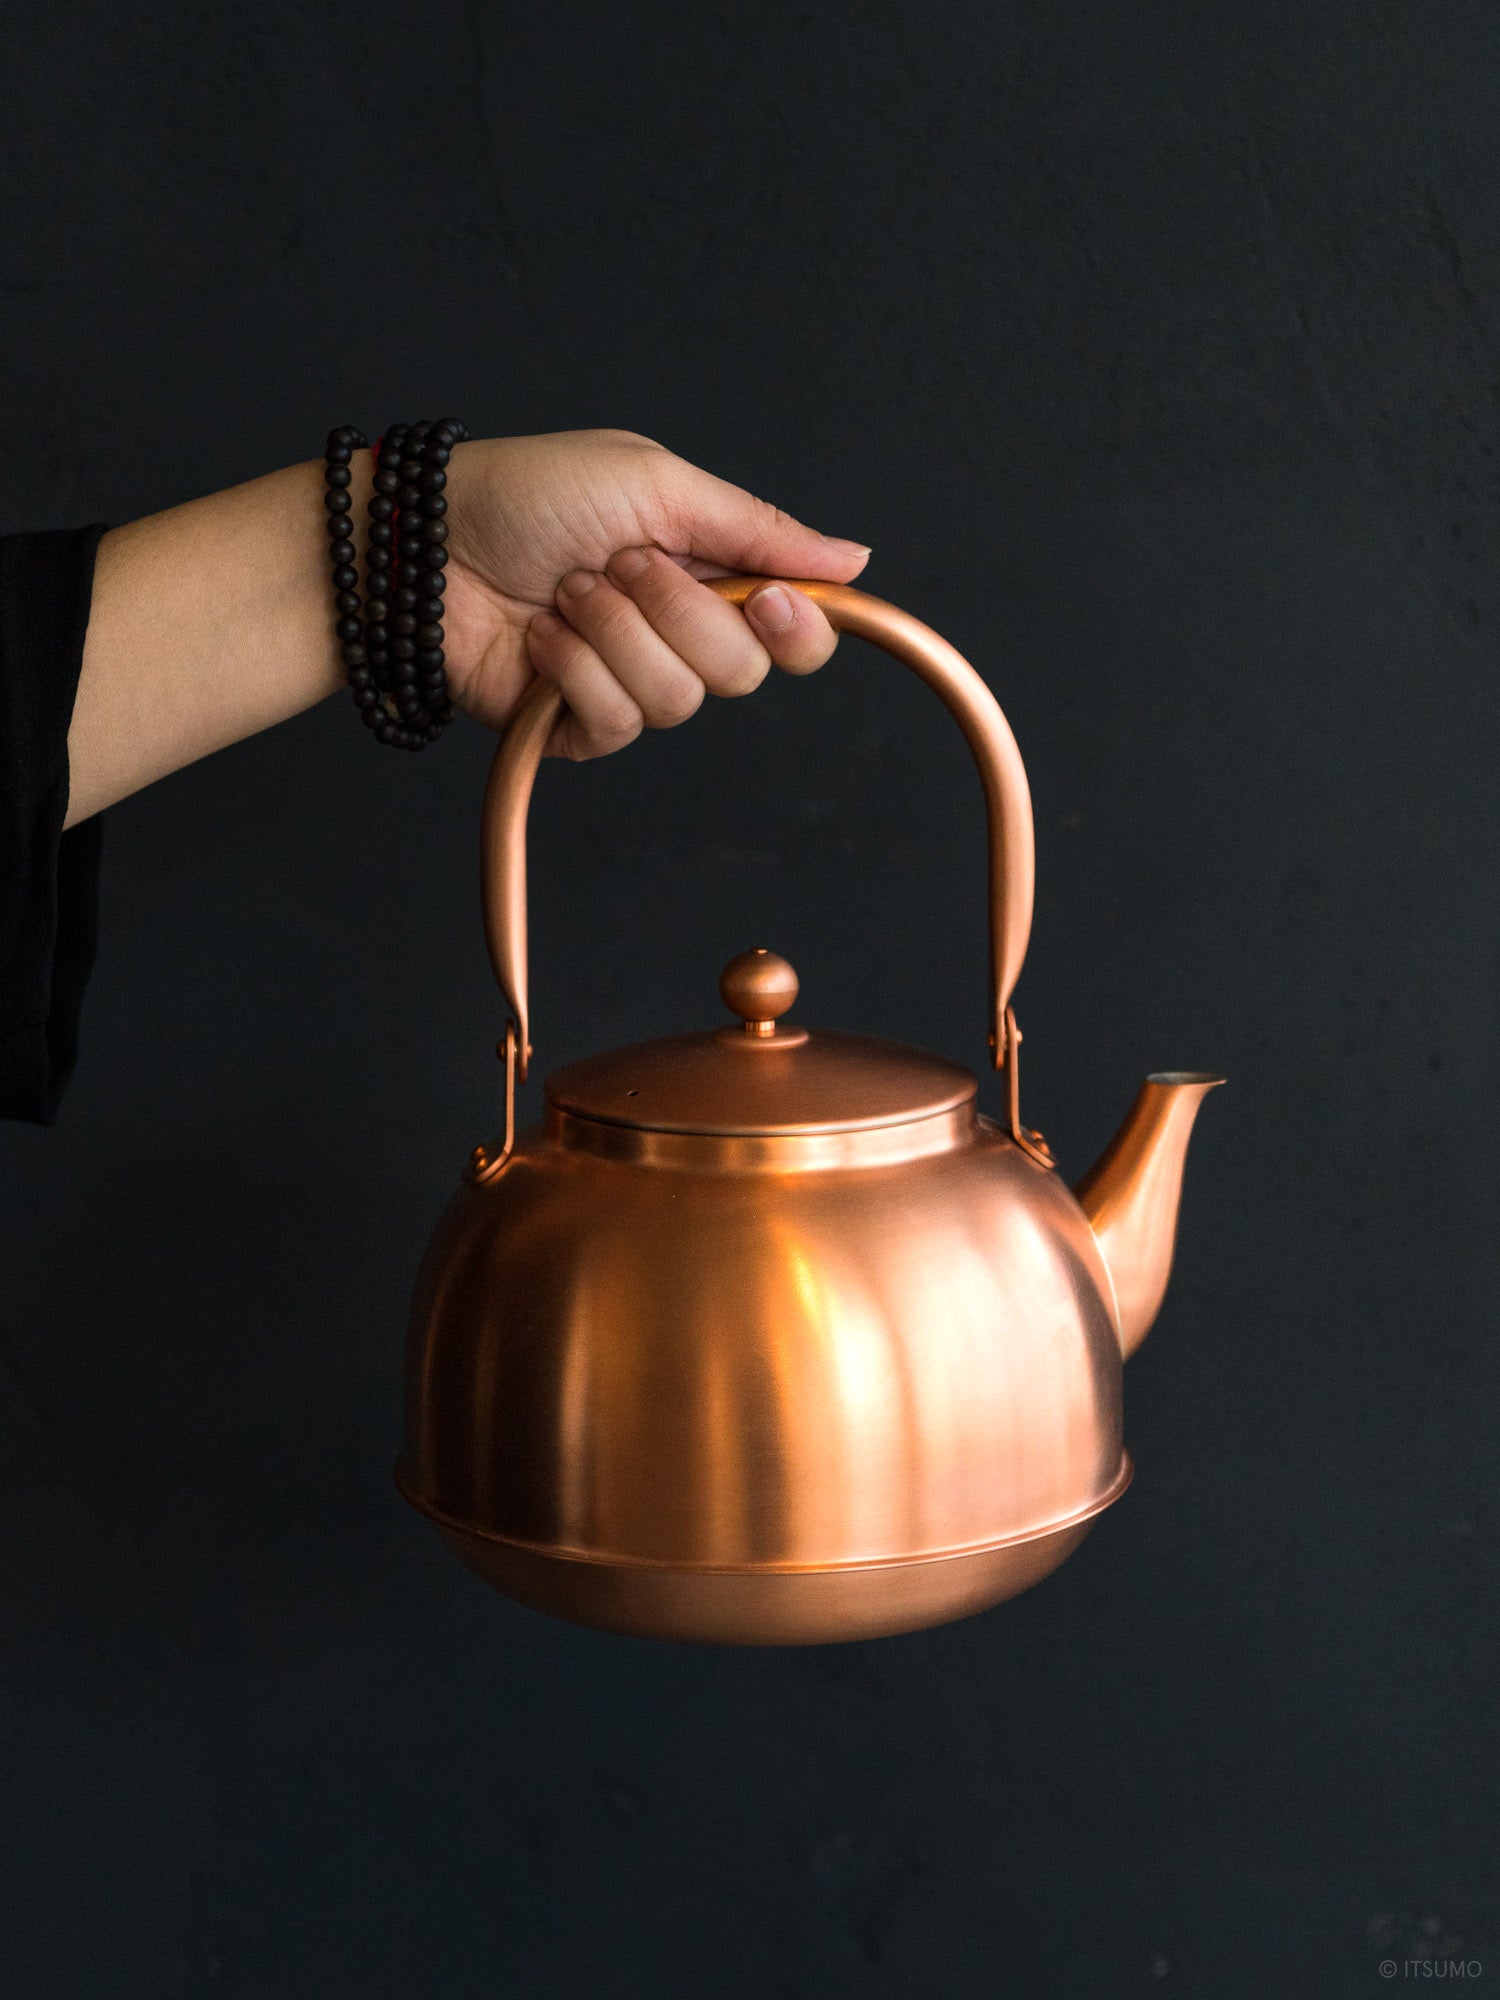 Lightweight 2L copper kettle made by Azmaya in Japan